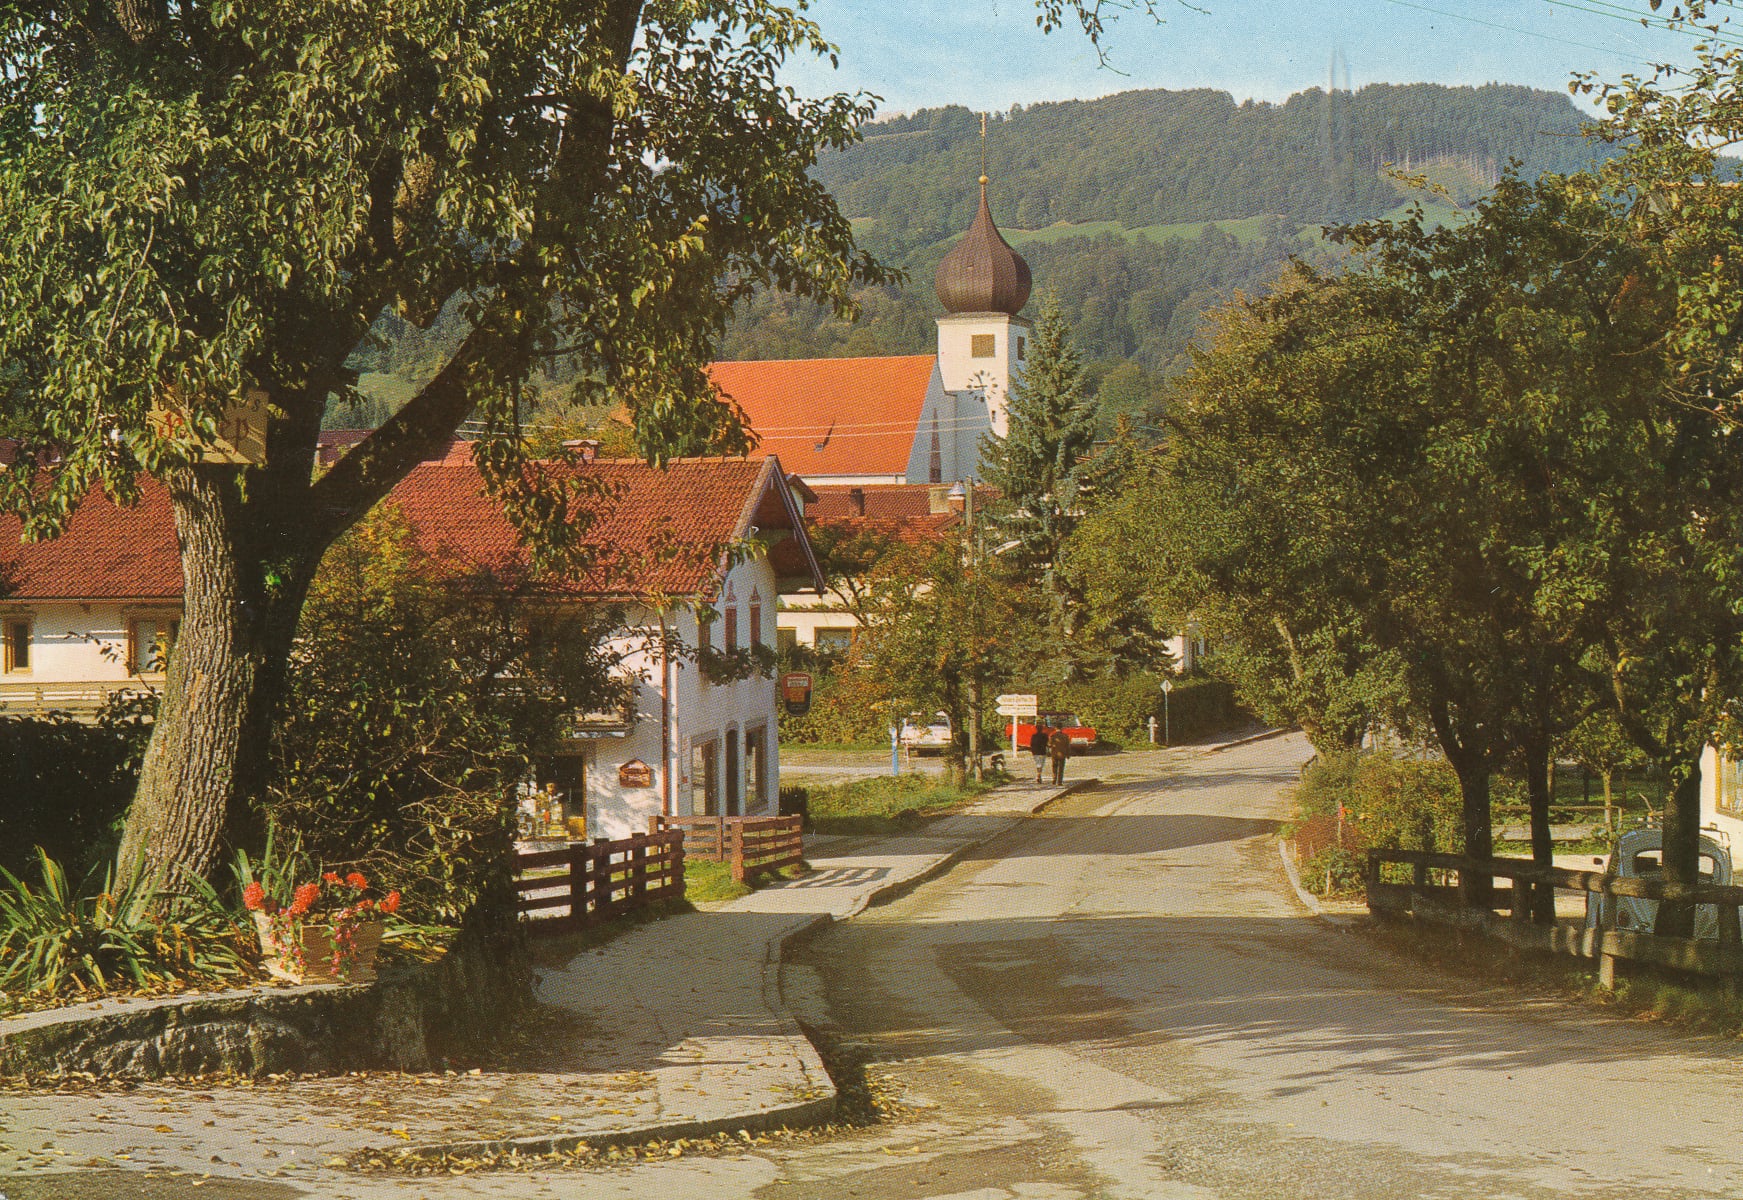 Bad Feilnbach mit Kirche und Bergen im Hintergrund im Jahr 1986